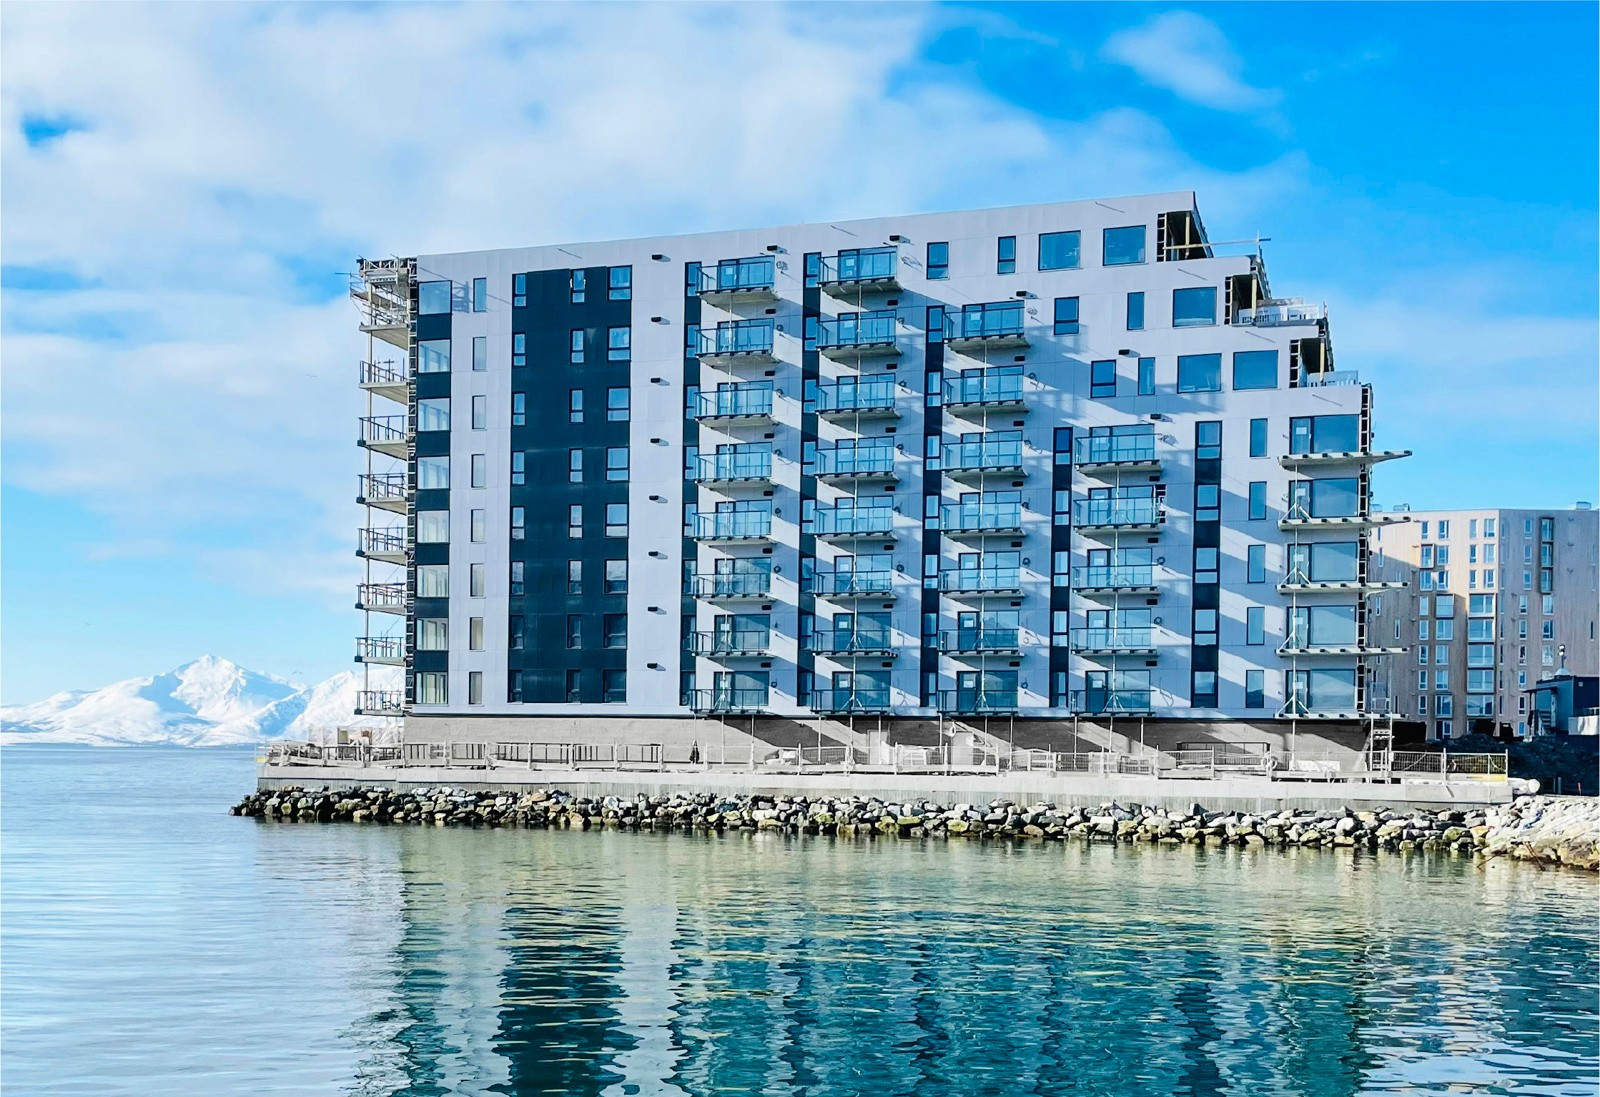 Bo i maritime omgivelser på fantastiske Nyholmen! Leiligheten leveres med smarthus-konsept. Det innebærer at leiligheten får trådløs styring av lys fra egen App på mobil eller nettbrett